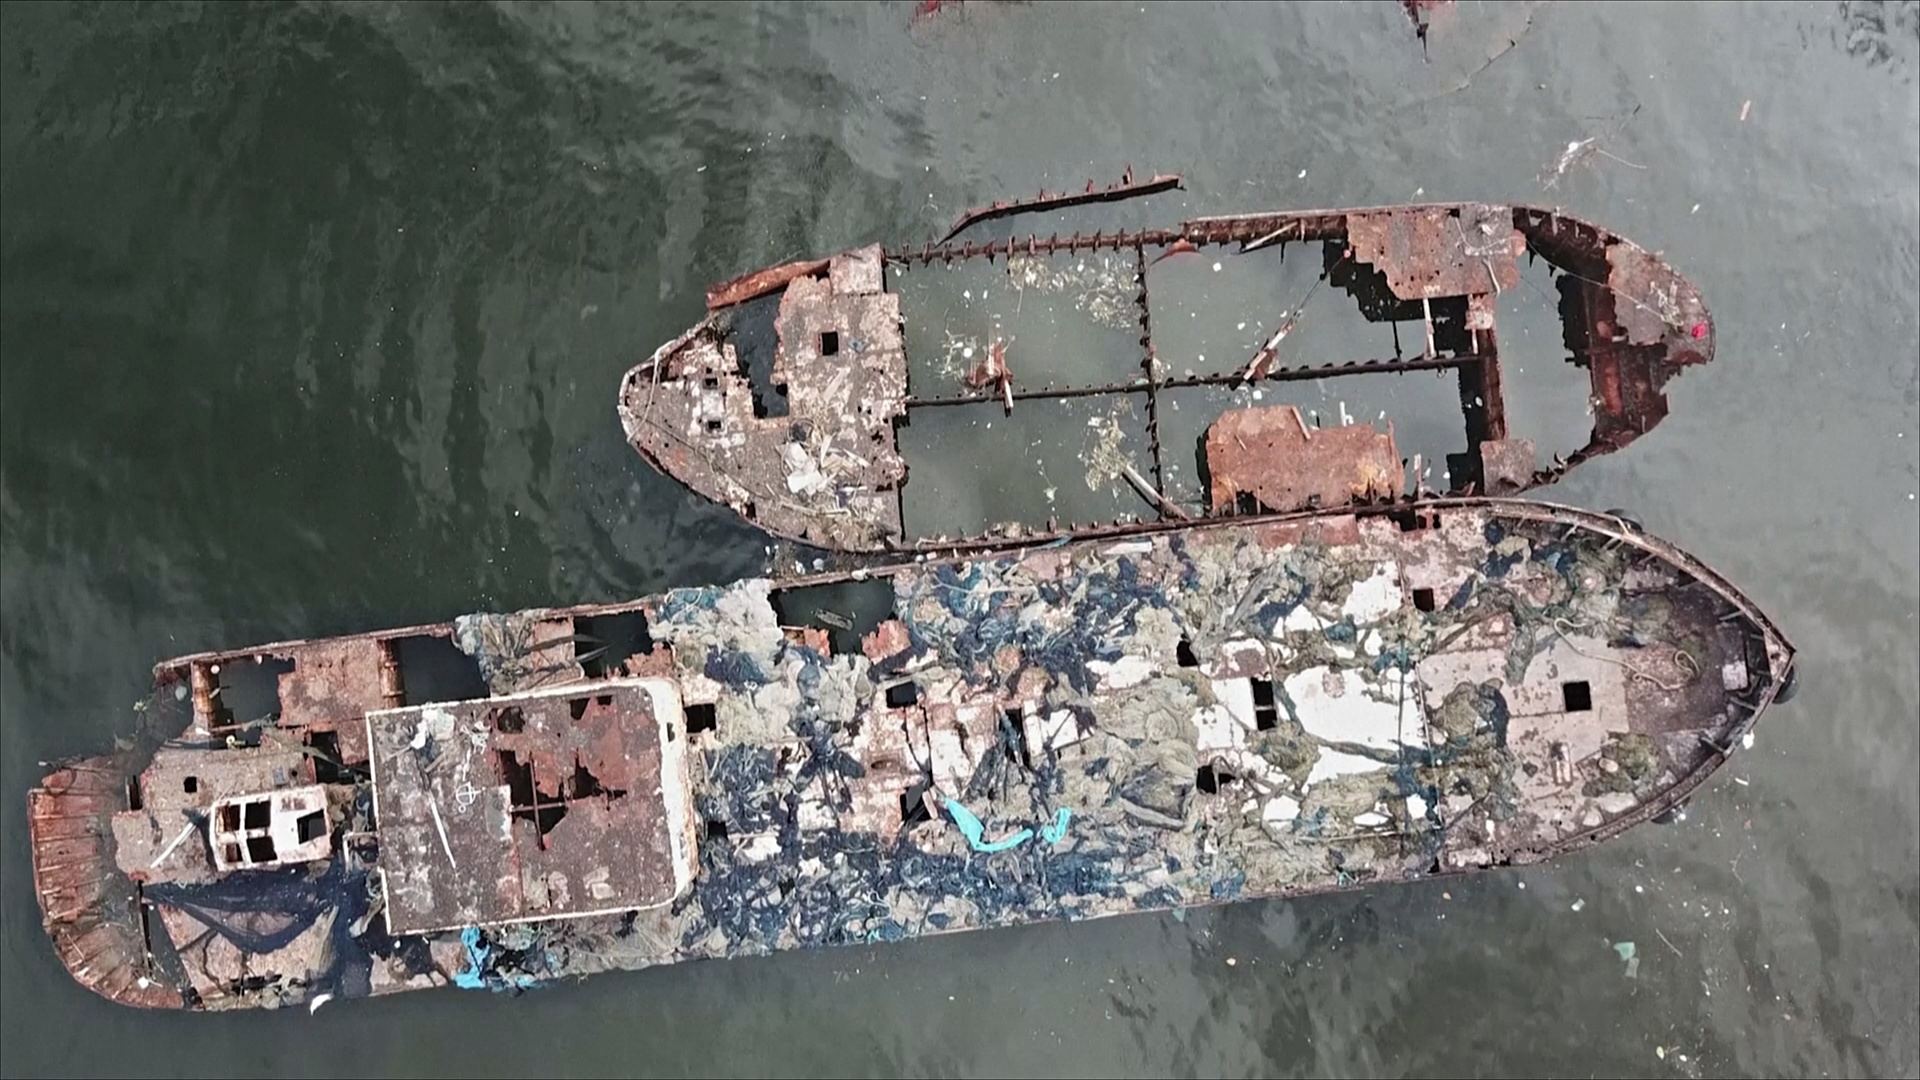 Кладбище кораблей в заливе Гуанабара грозит вылиться в экологическую катастрофу